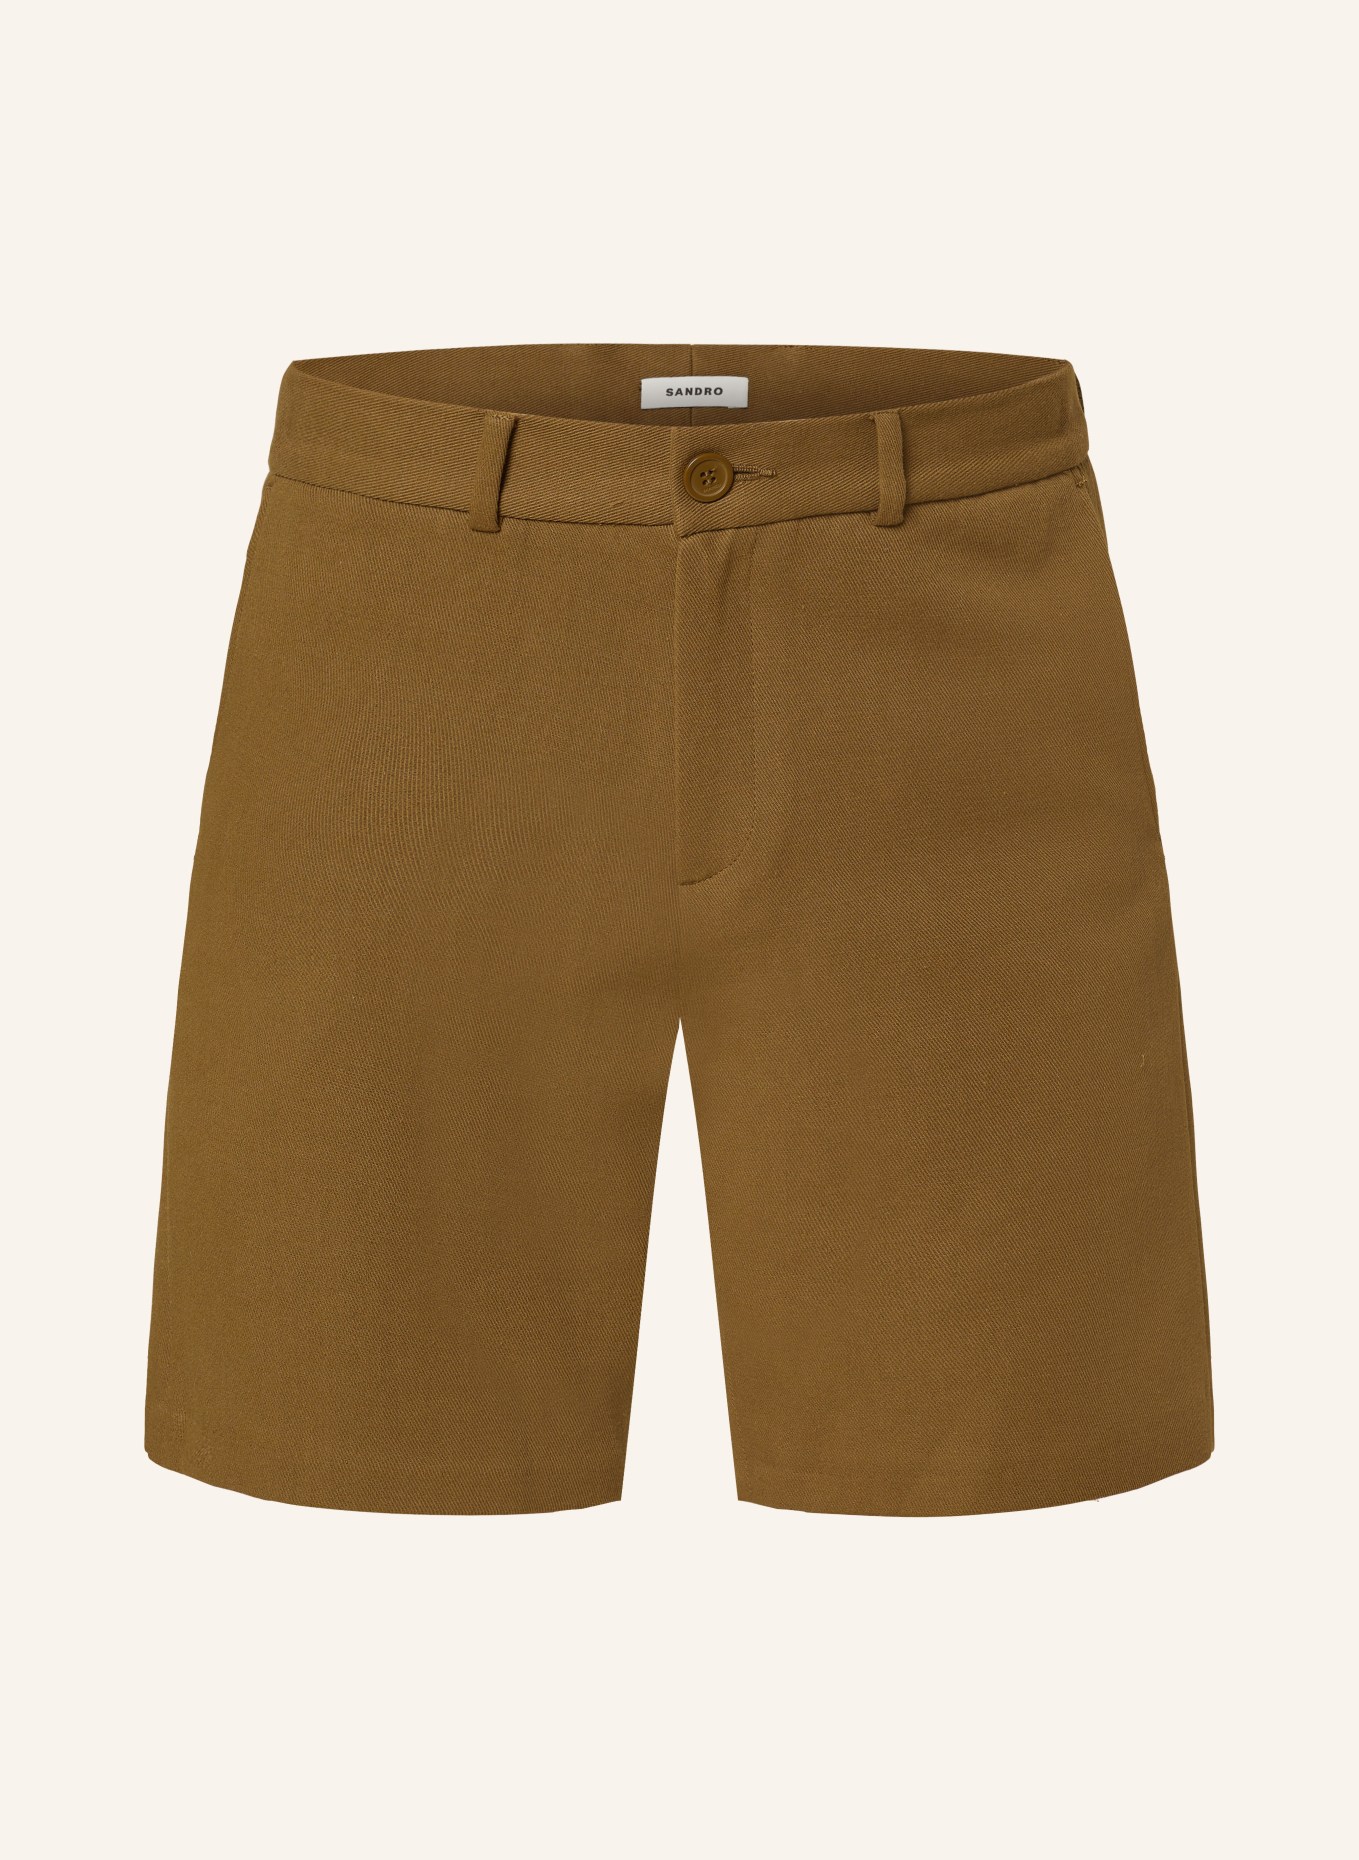 SANDRO Shorts, Farbe: CAMEL (Bild 1)